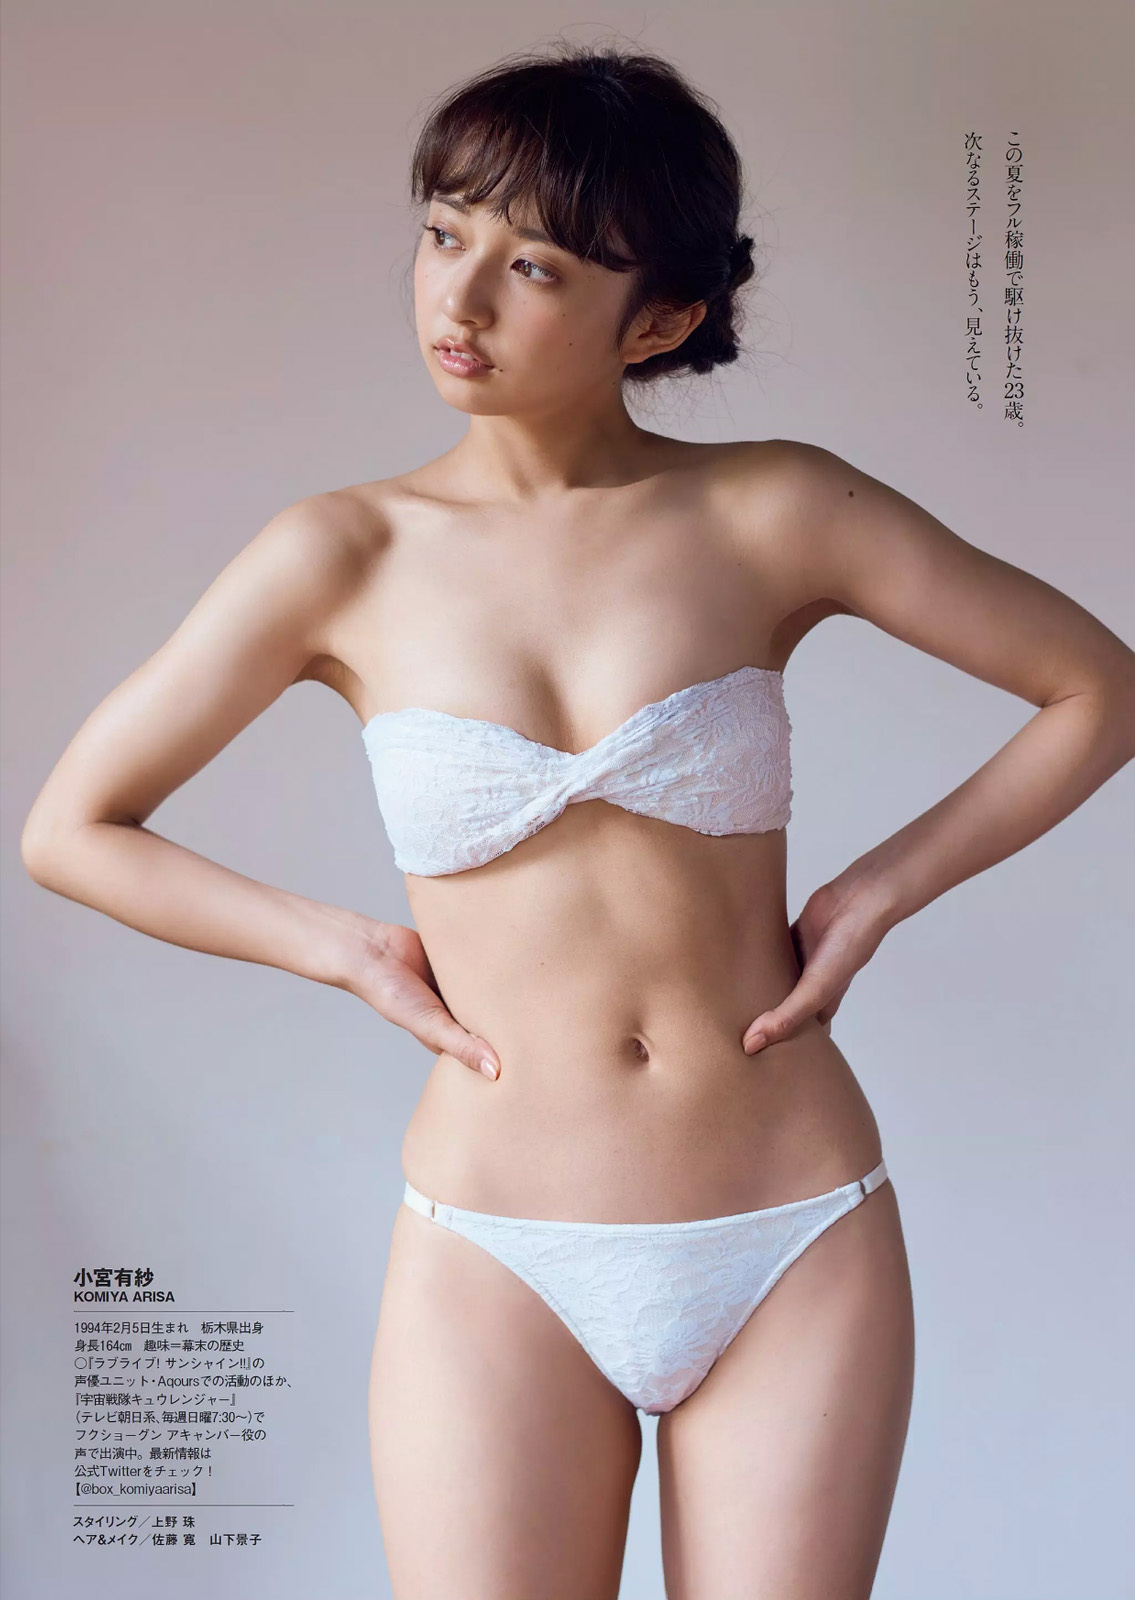 Arisa Komiya 小宮有紗, Weekly Playboy 2017 No.39-40 (週刊プレイボーイ 2017年39-40号)